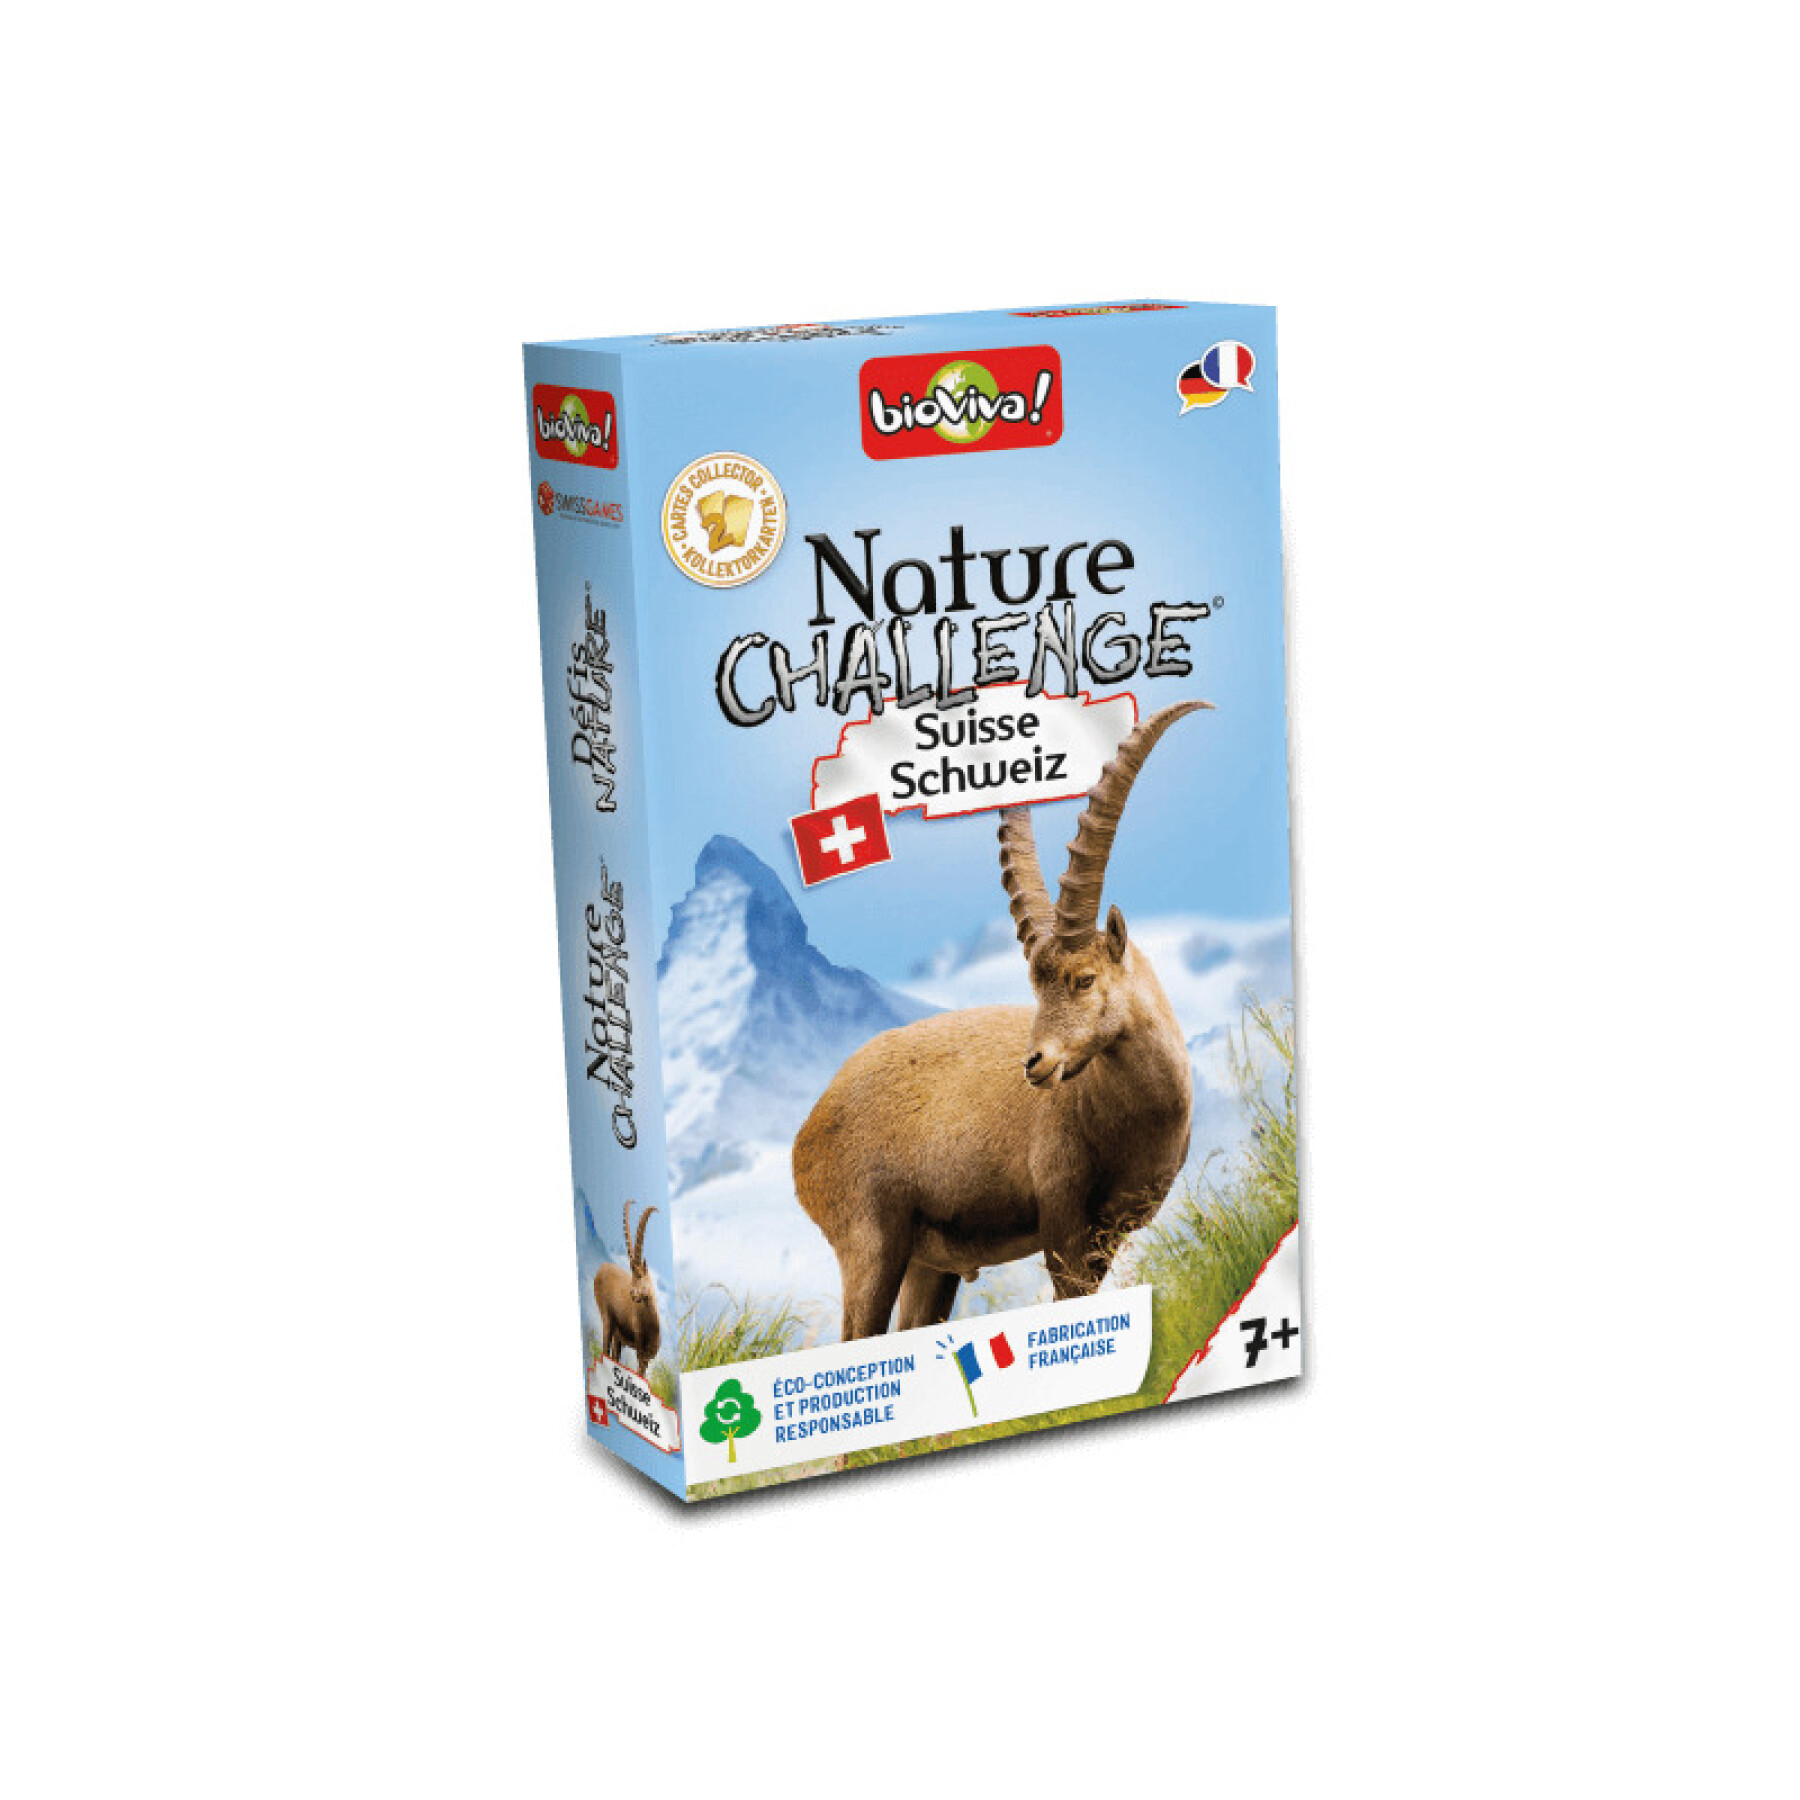 Nature challenge board games - Switzerland Bioviva